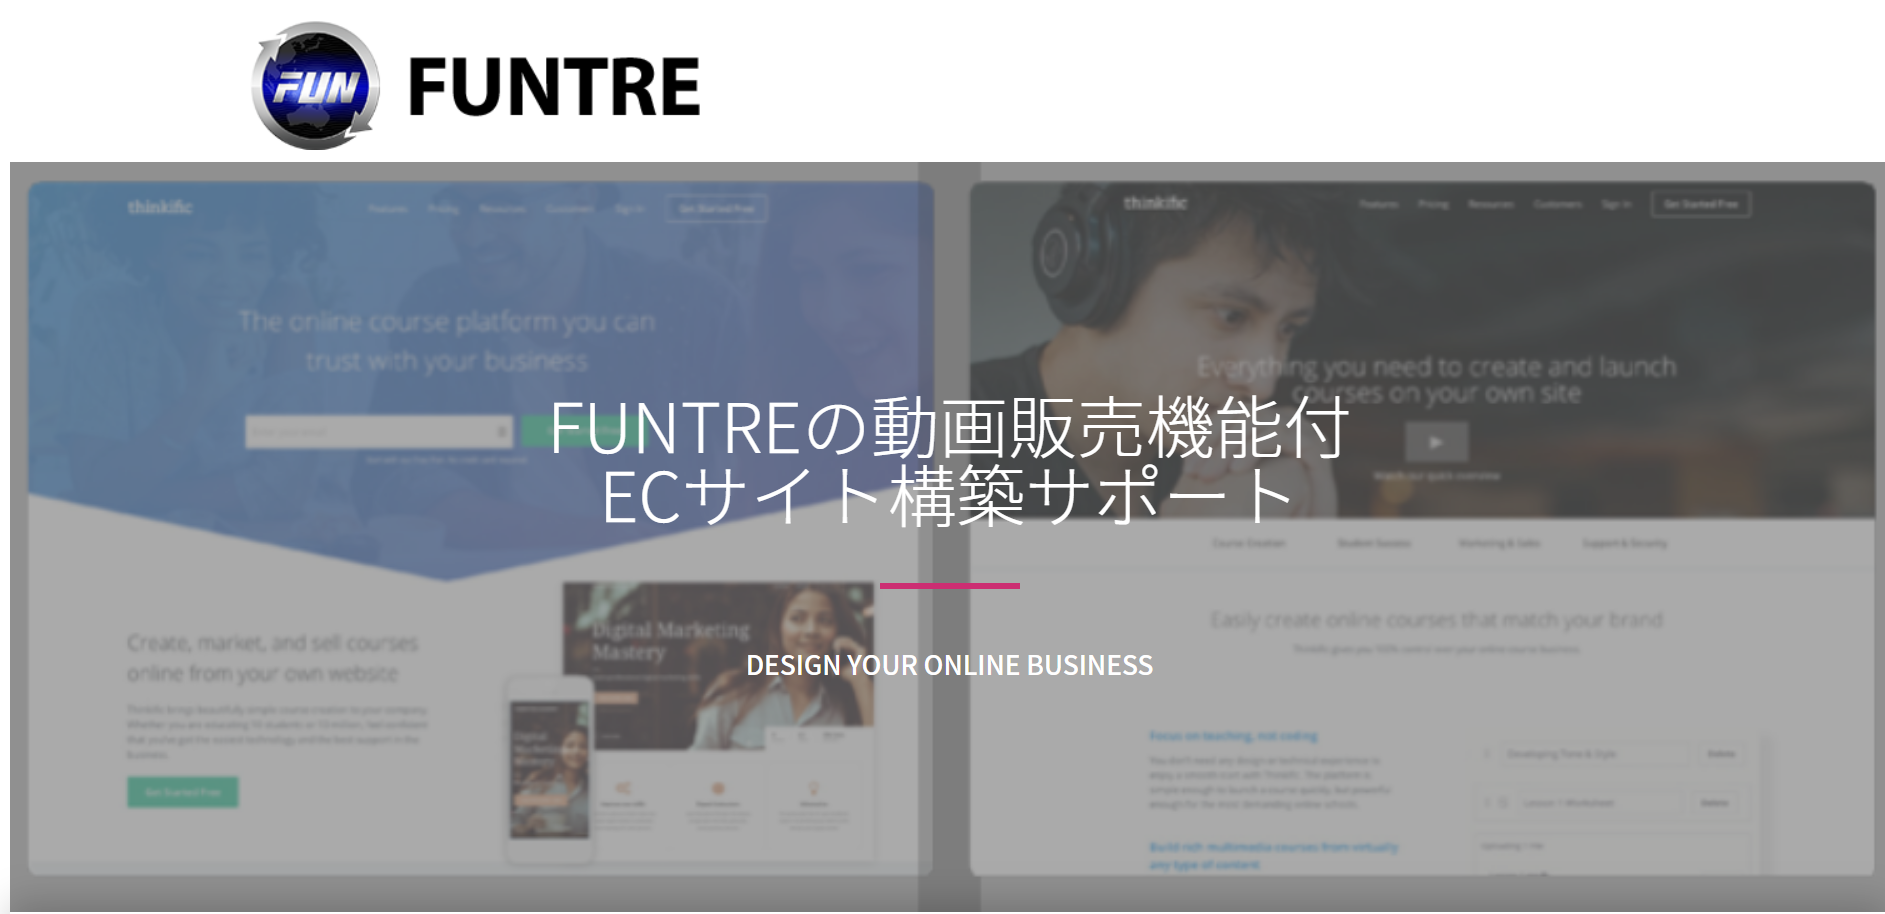 FunTre株式会社のFunTre株式会社:ECサイト構築サービス